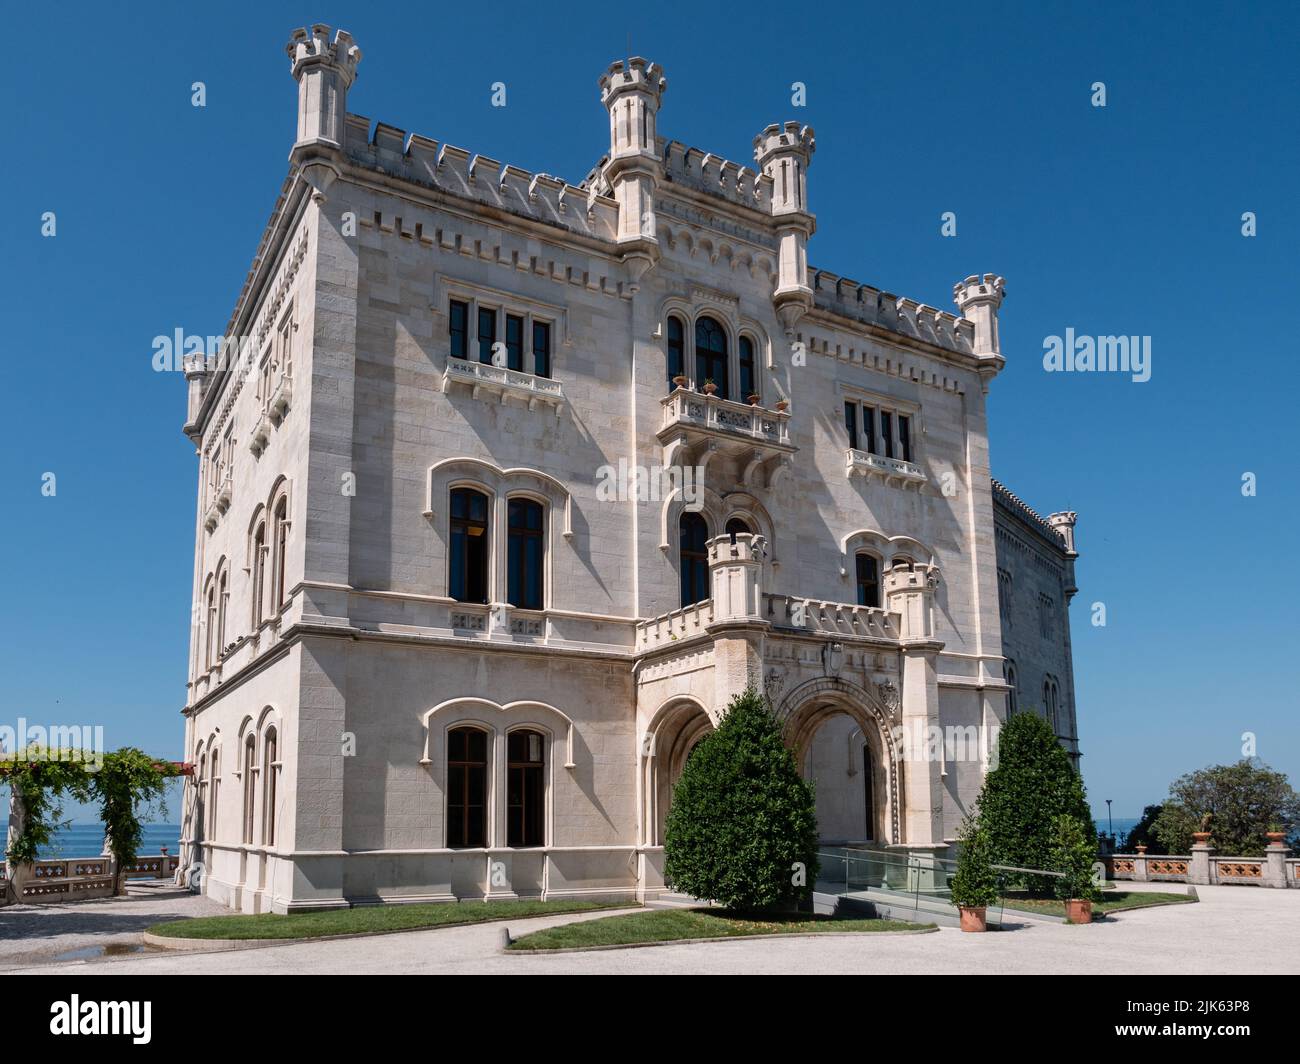 Castello di Miramare Castle Exterior Facade in Grignano Italy Stock Photo